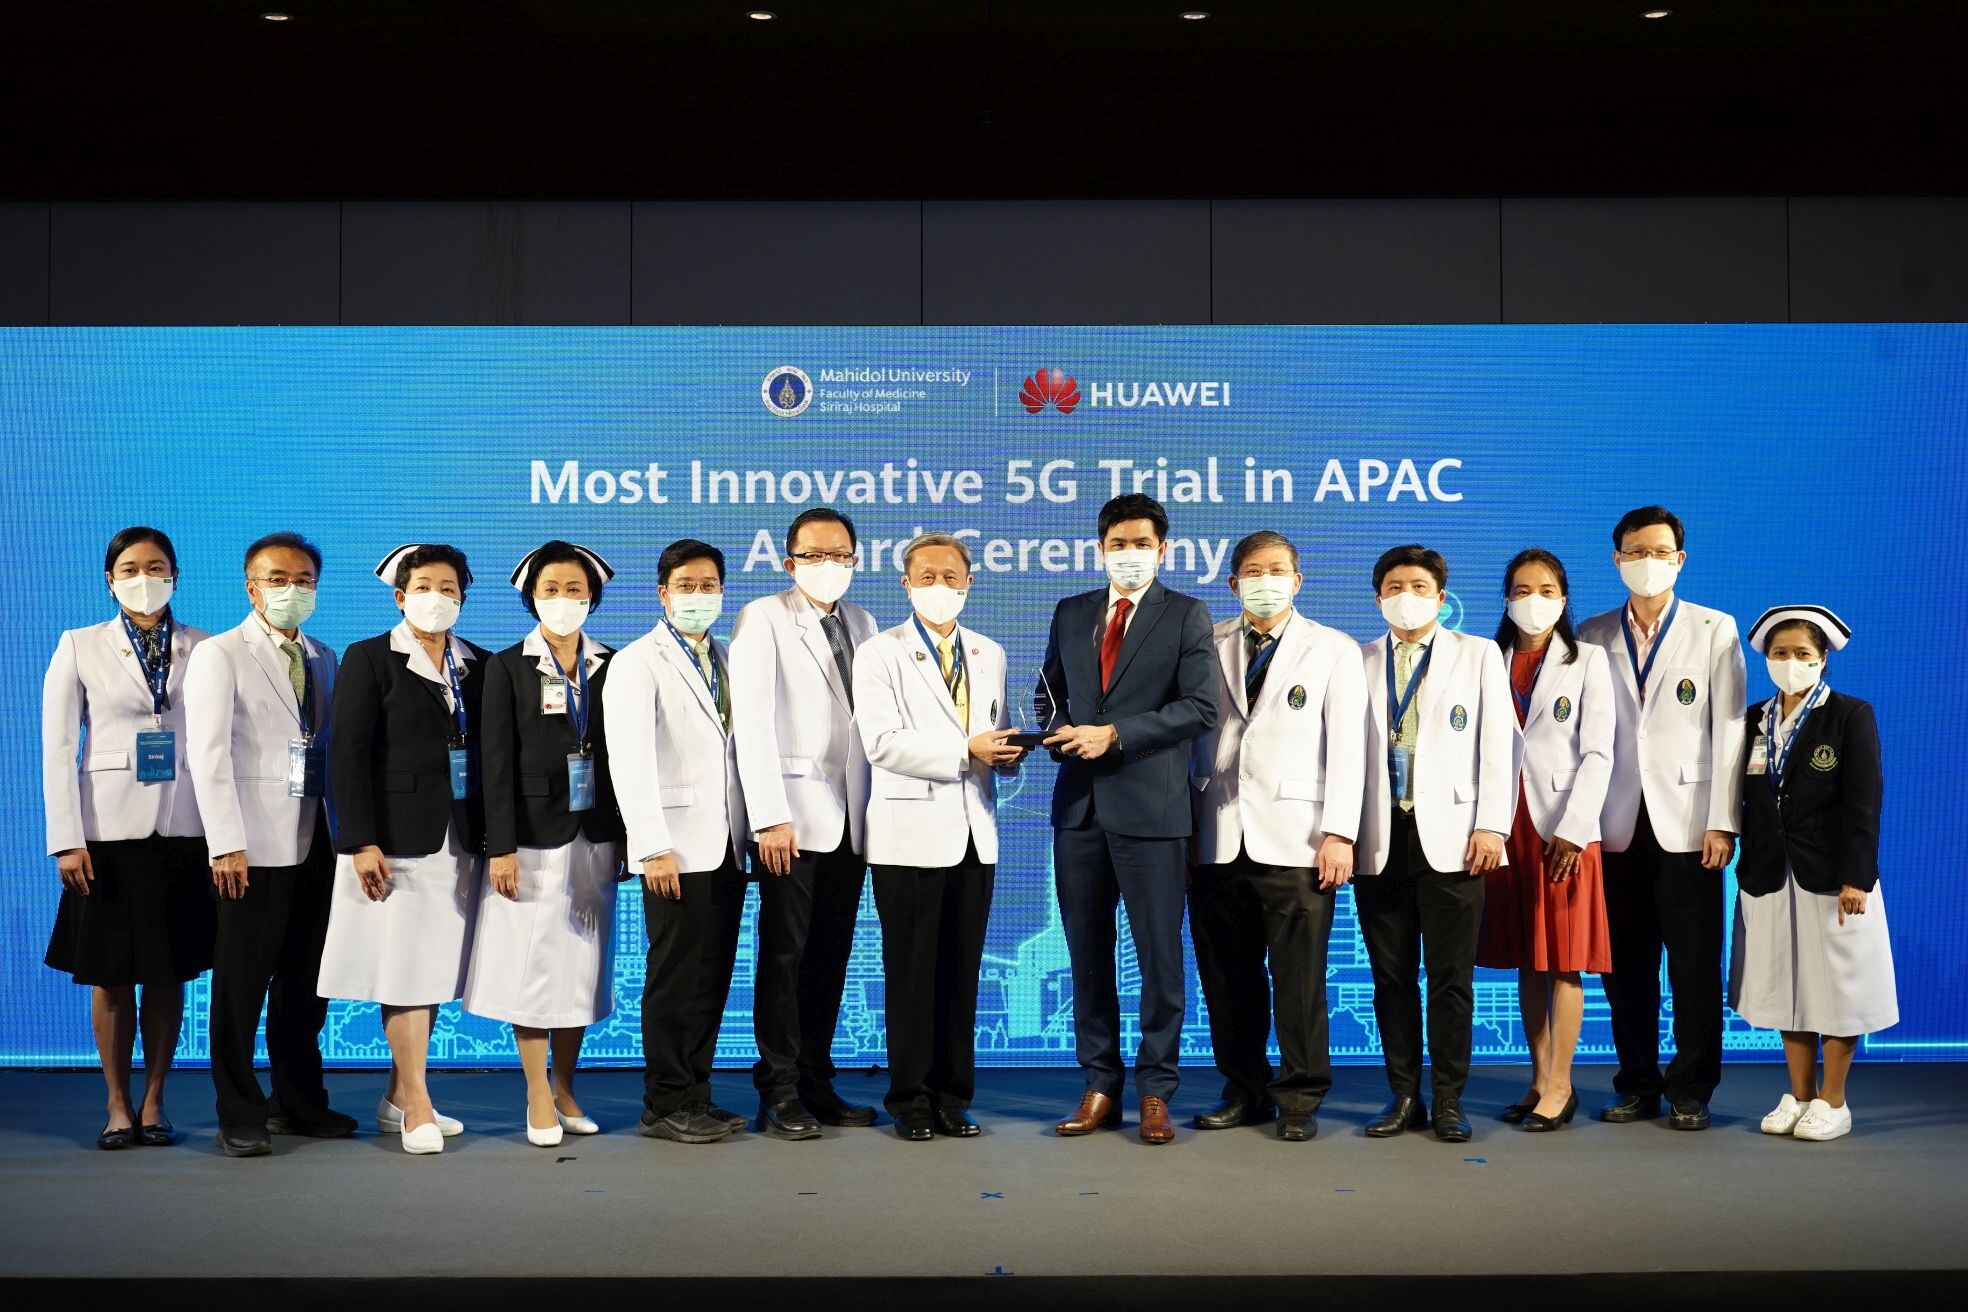 ศิริราชคว้ารางวัลอันทรงเกียรติ จากโครงการ "โรงพยาบาลอัจฉริยะ 5G ที่ปลอดภัยและเชื่อถือได้ ในประเทศไทย"